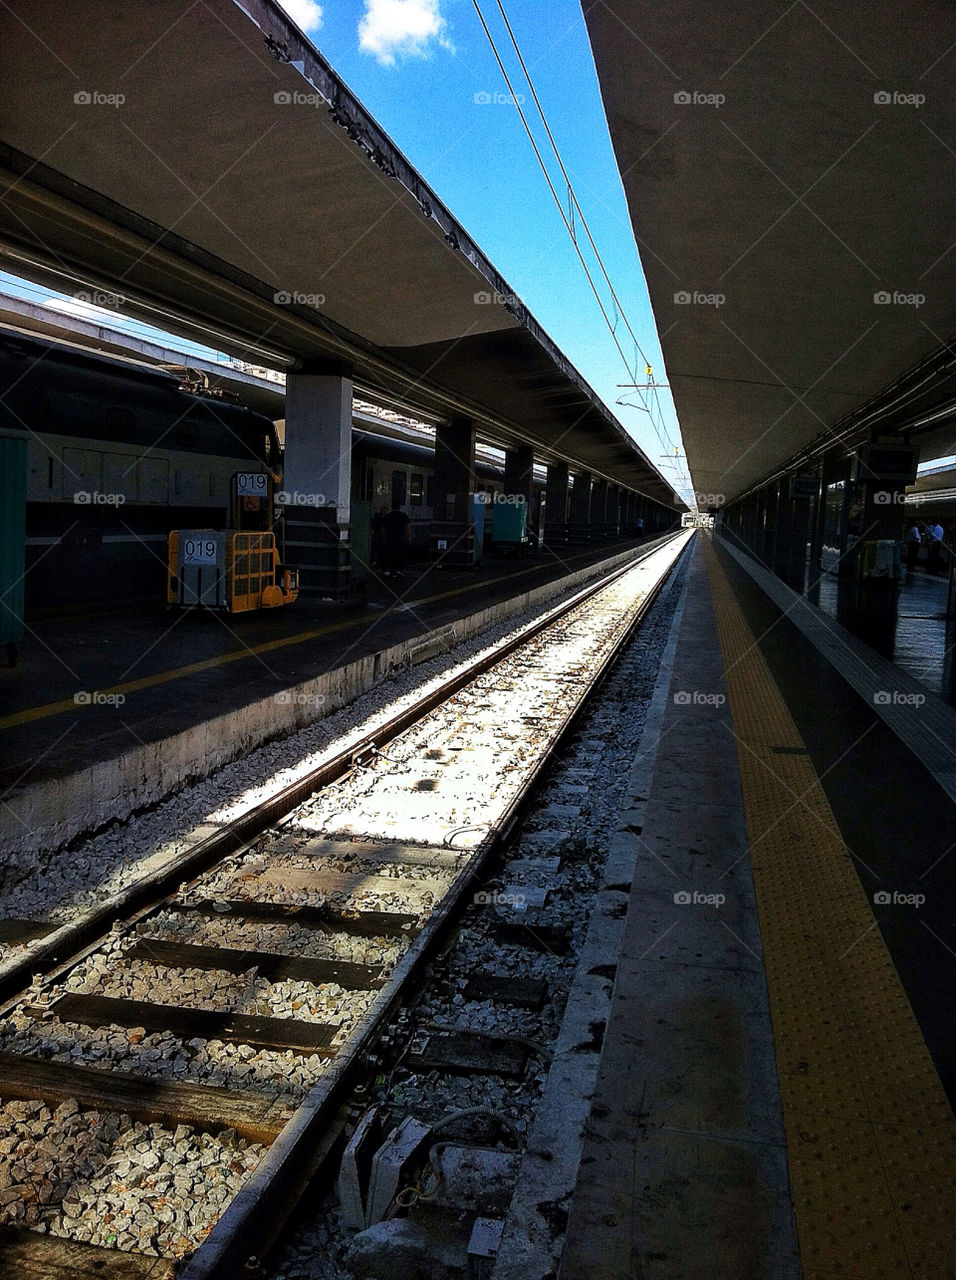 italy train tracks infinity by lguarini